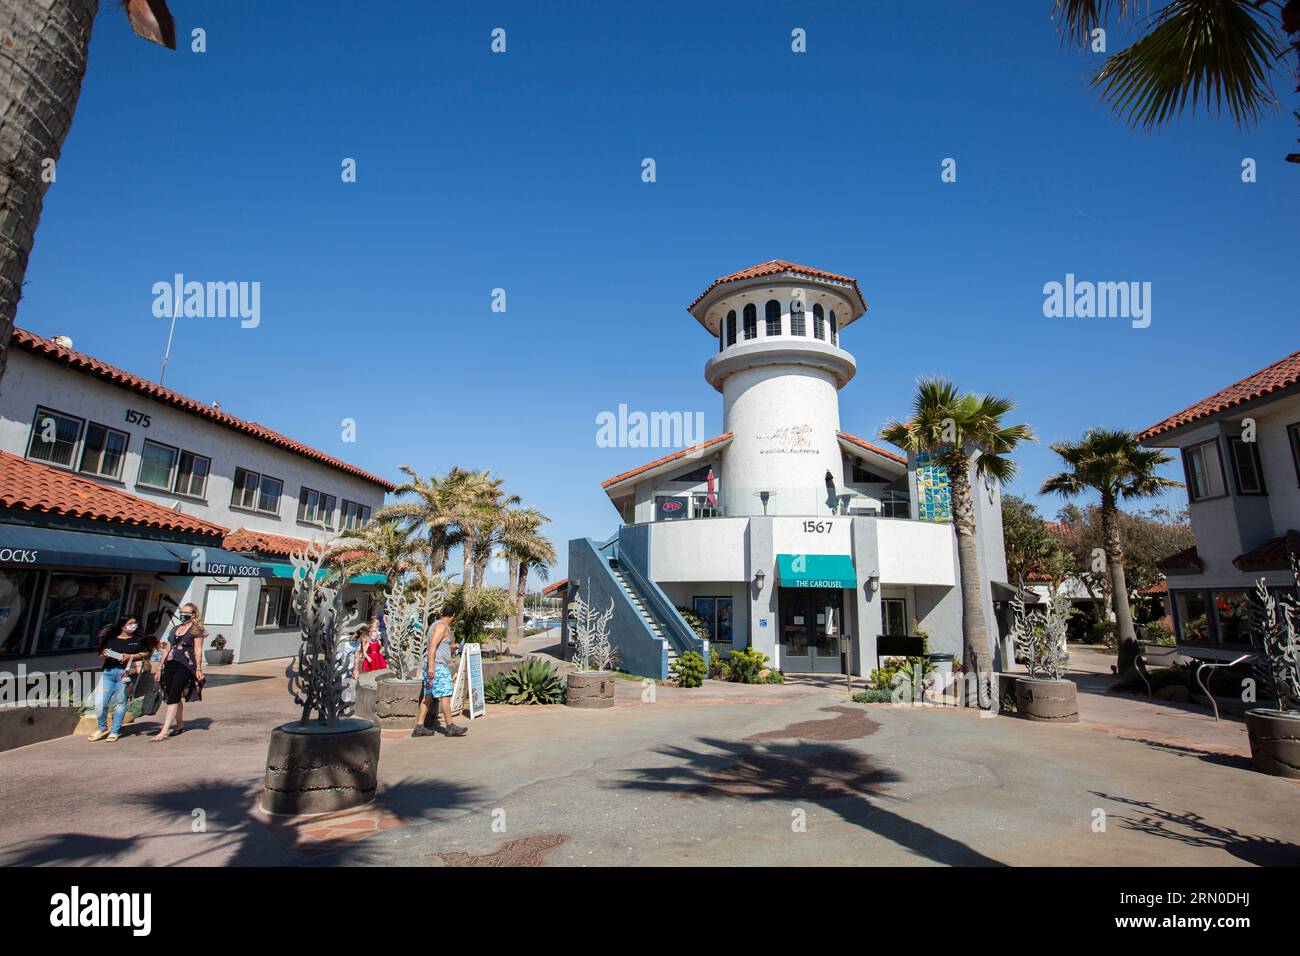 Ventura, California, USA - 31 marzo 2021: Il sole del pomeriggio splende sui negozi del Ventura Harbor Village vicino al porticciolo. Foto Stock